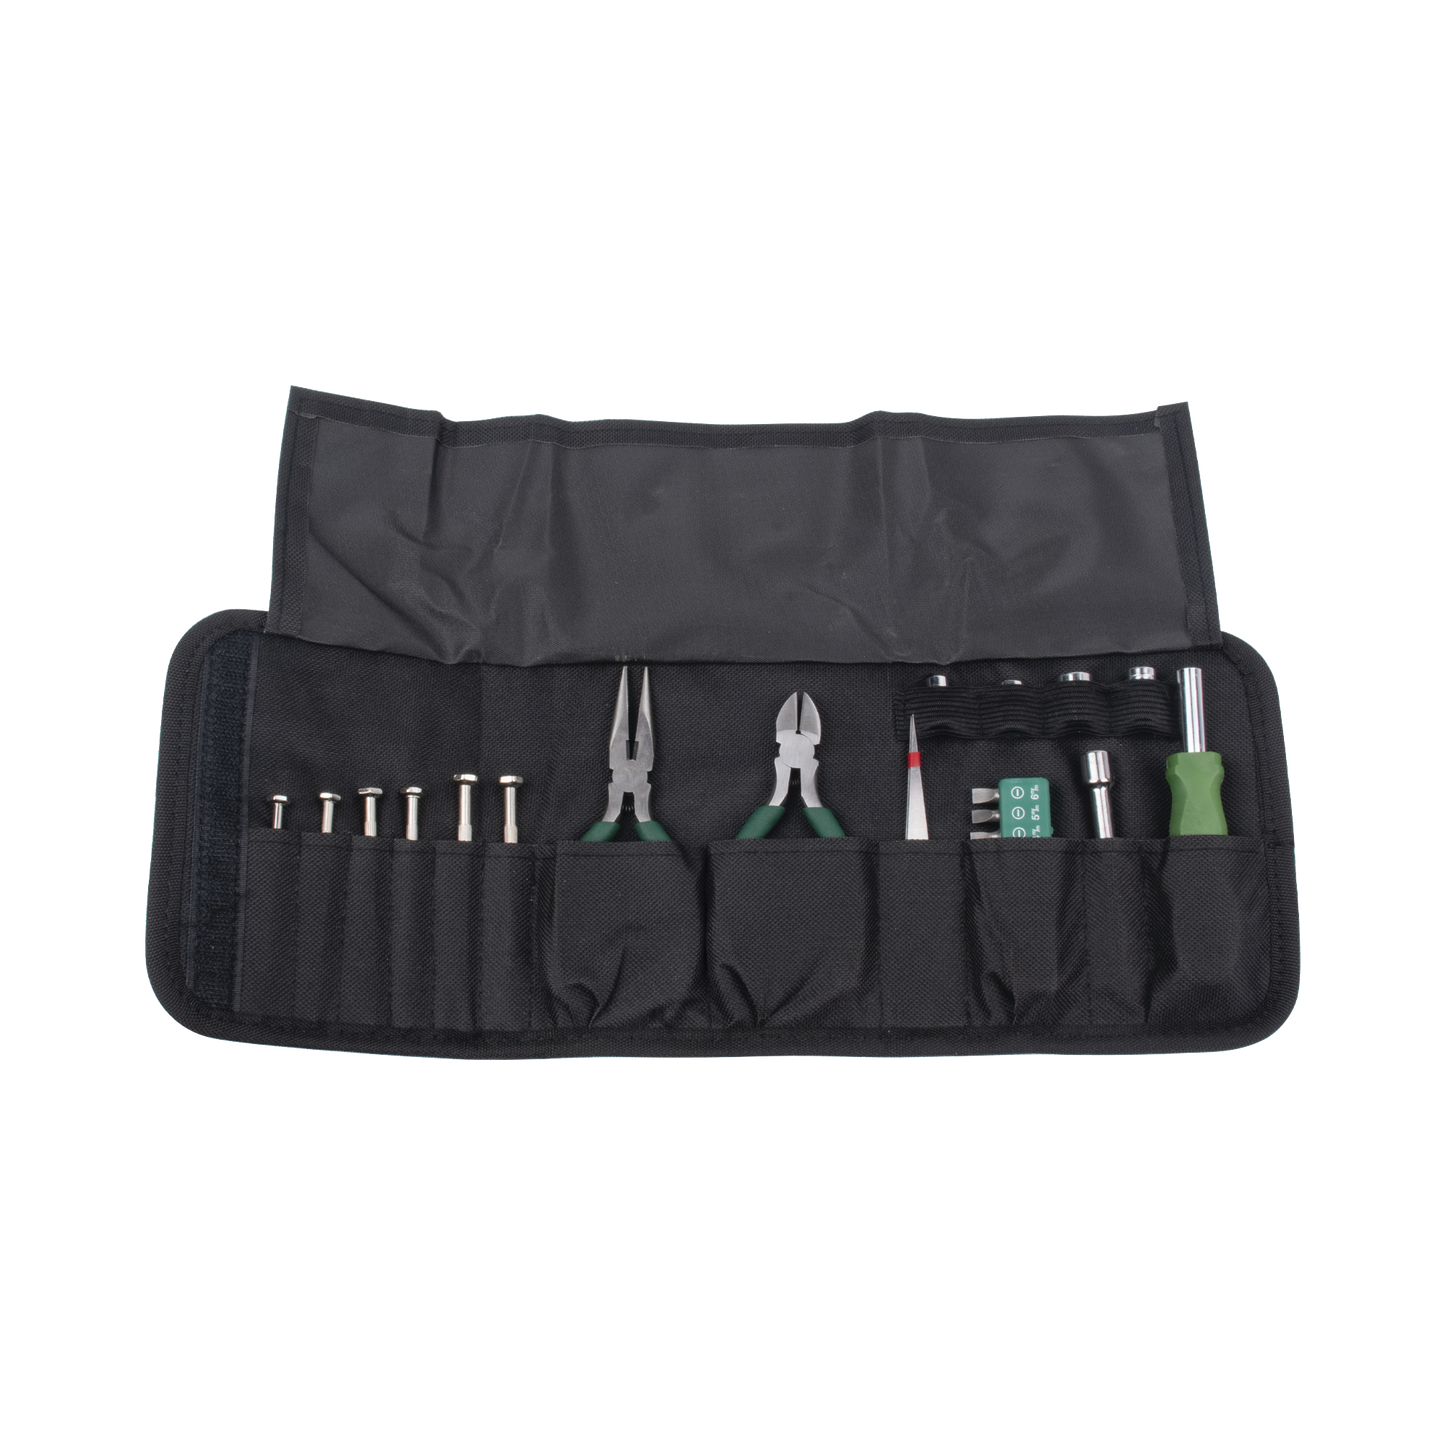 Tool Kit in Portable Case (Screwdrivers + Tweezers + Tips + Handle).